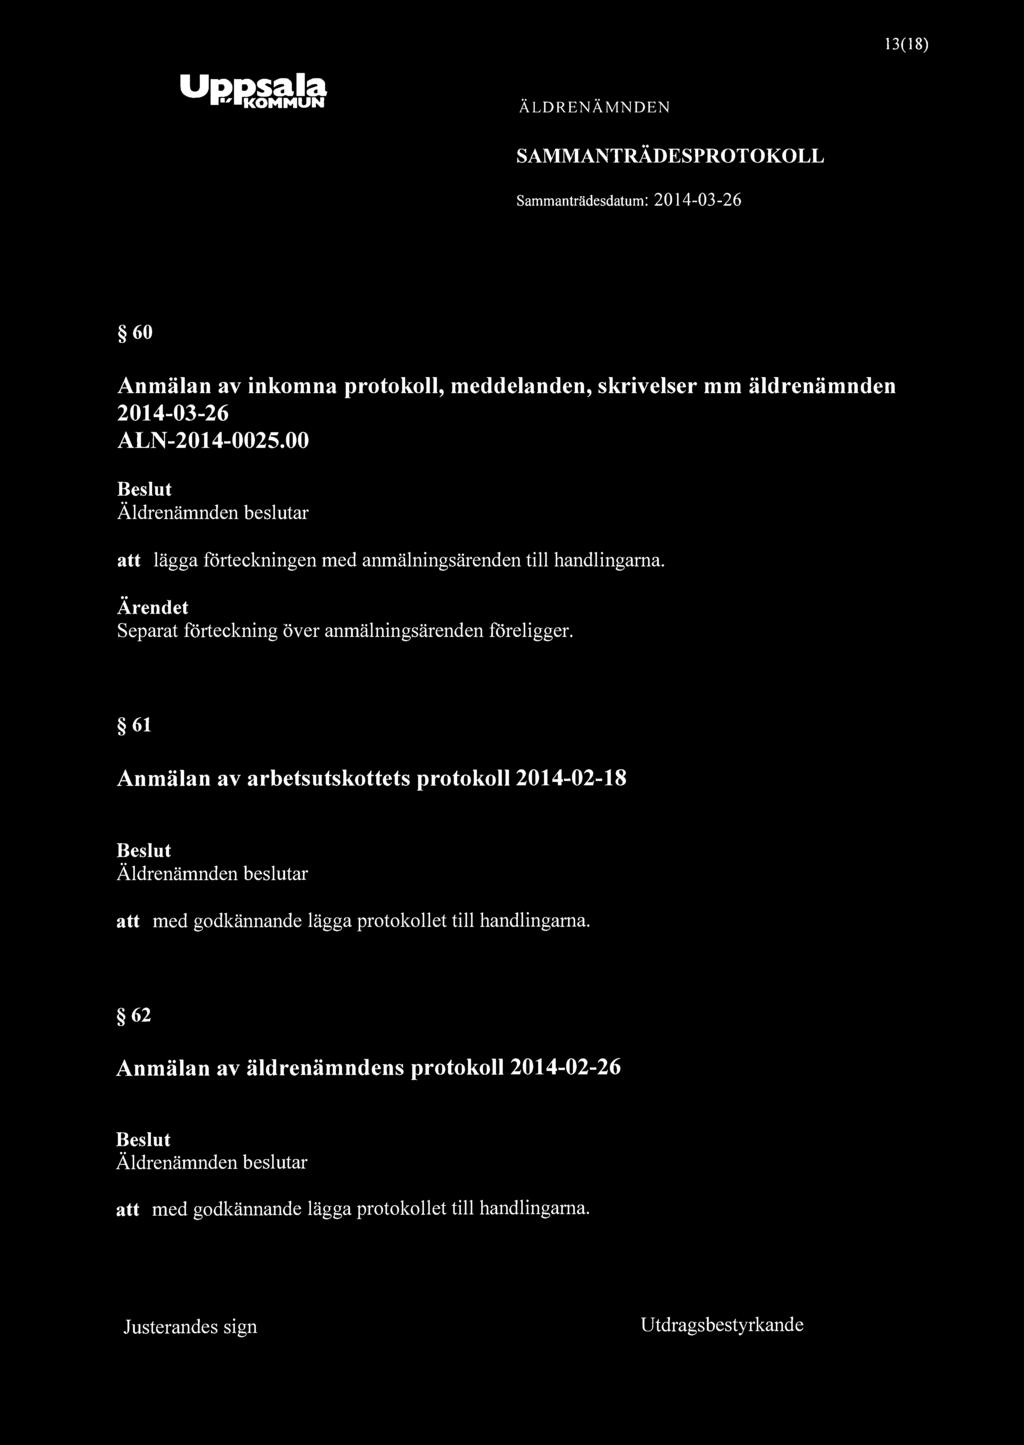 13(18) Uppsala "KOMMUN 60 Anmälan av inkomna protokoll, meddelanden, skrivelser mm äldrenämnden 2014-03-26 ALN-2014-0025.00 att lägga förteckningen med anmälningsärenden till handlingarna.